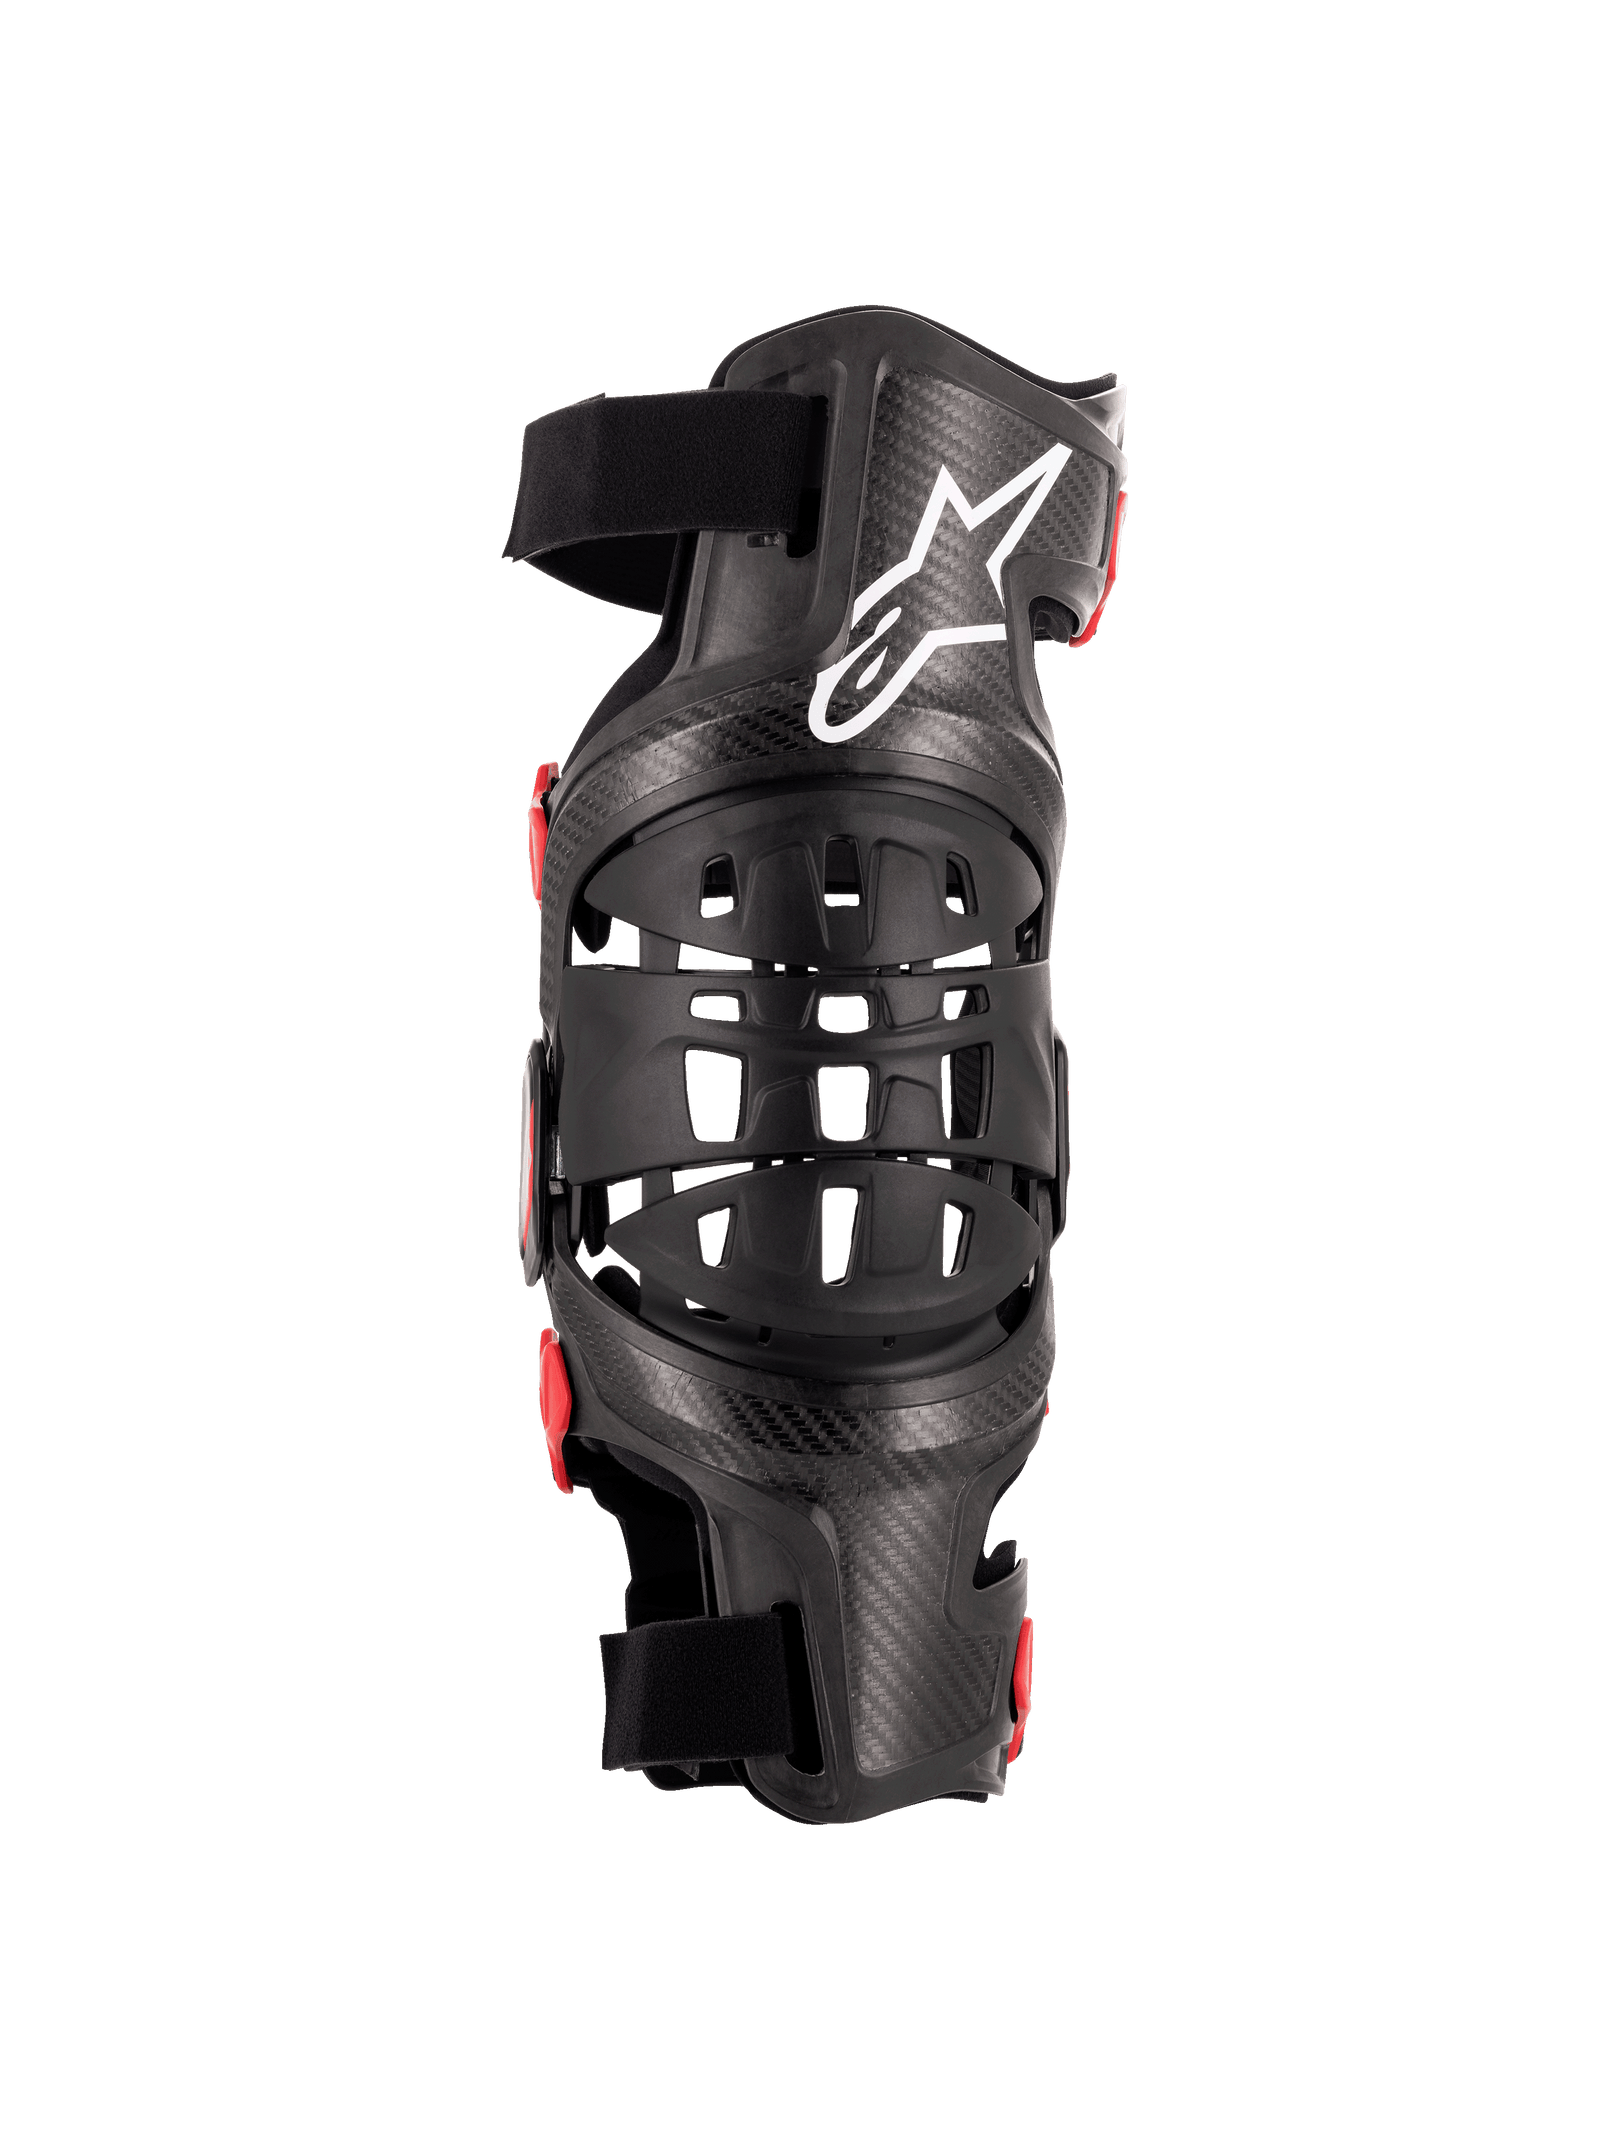 Bionic-10 Carbon Knee Brace - Left